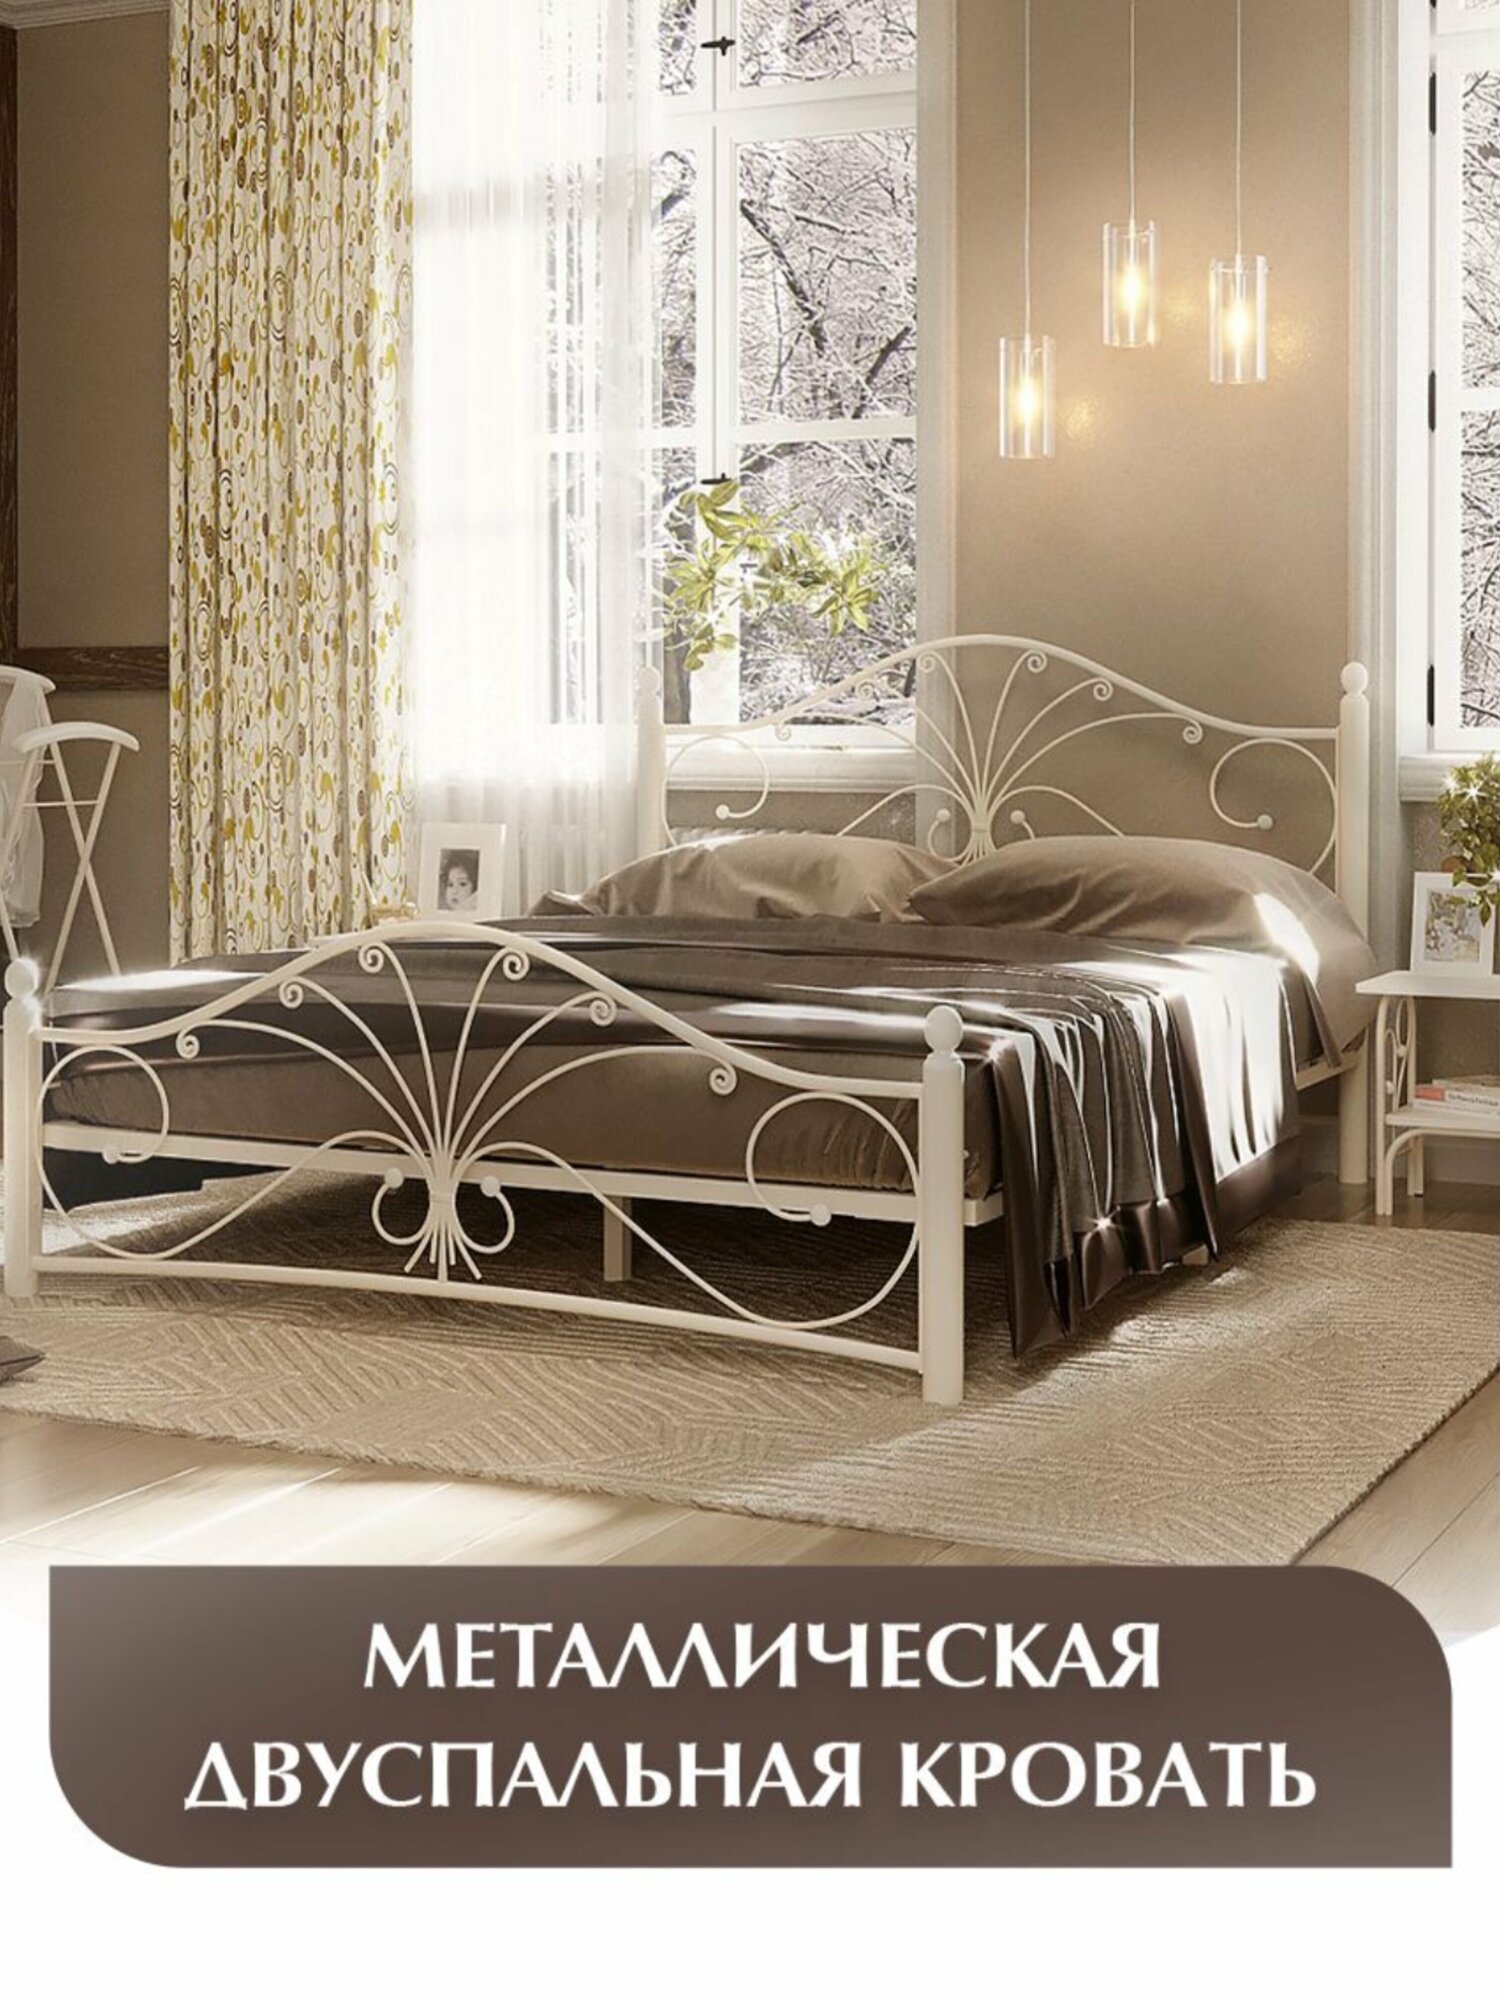 Двуспальная кровать, кремово-белая, железная, металлическая, 160х200 см